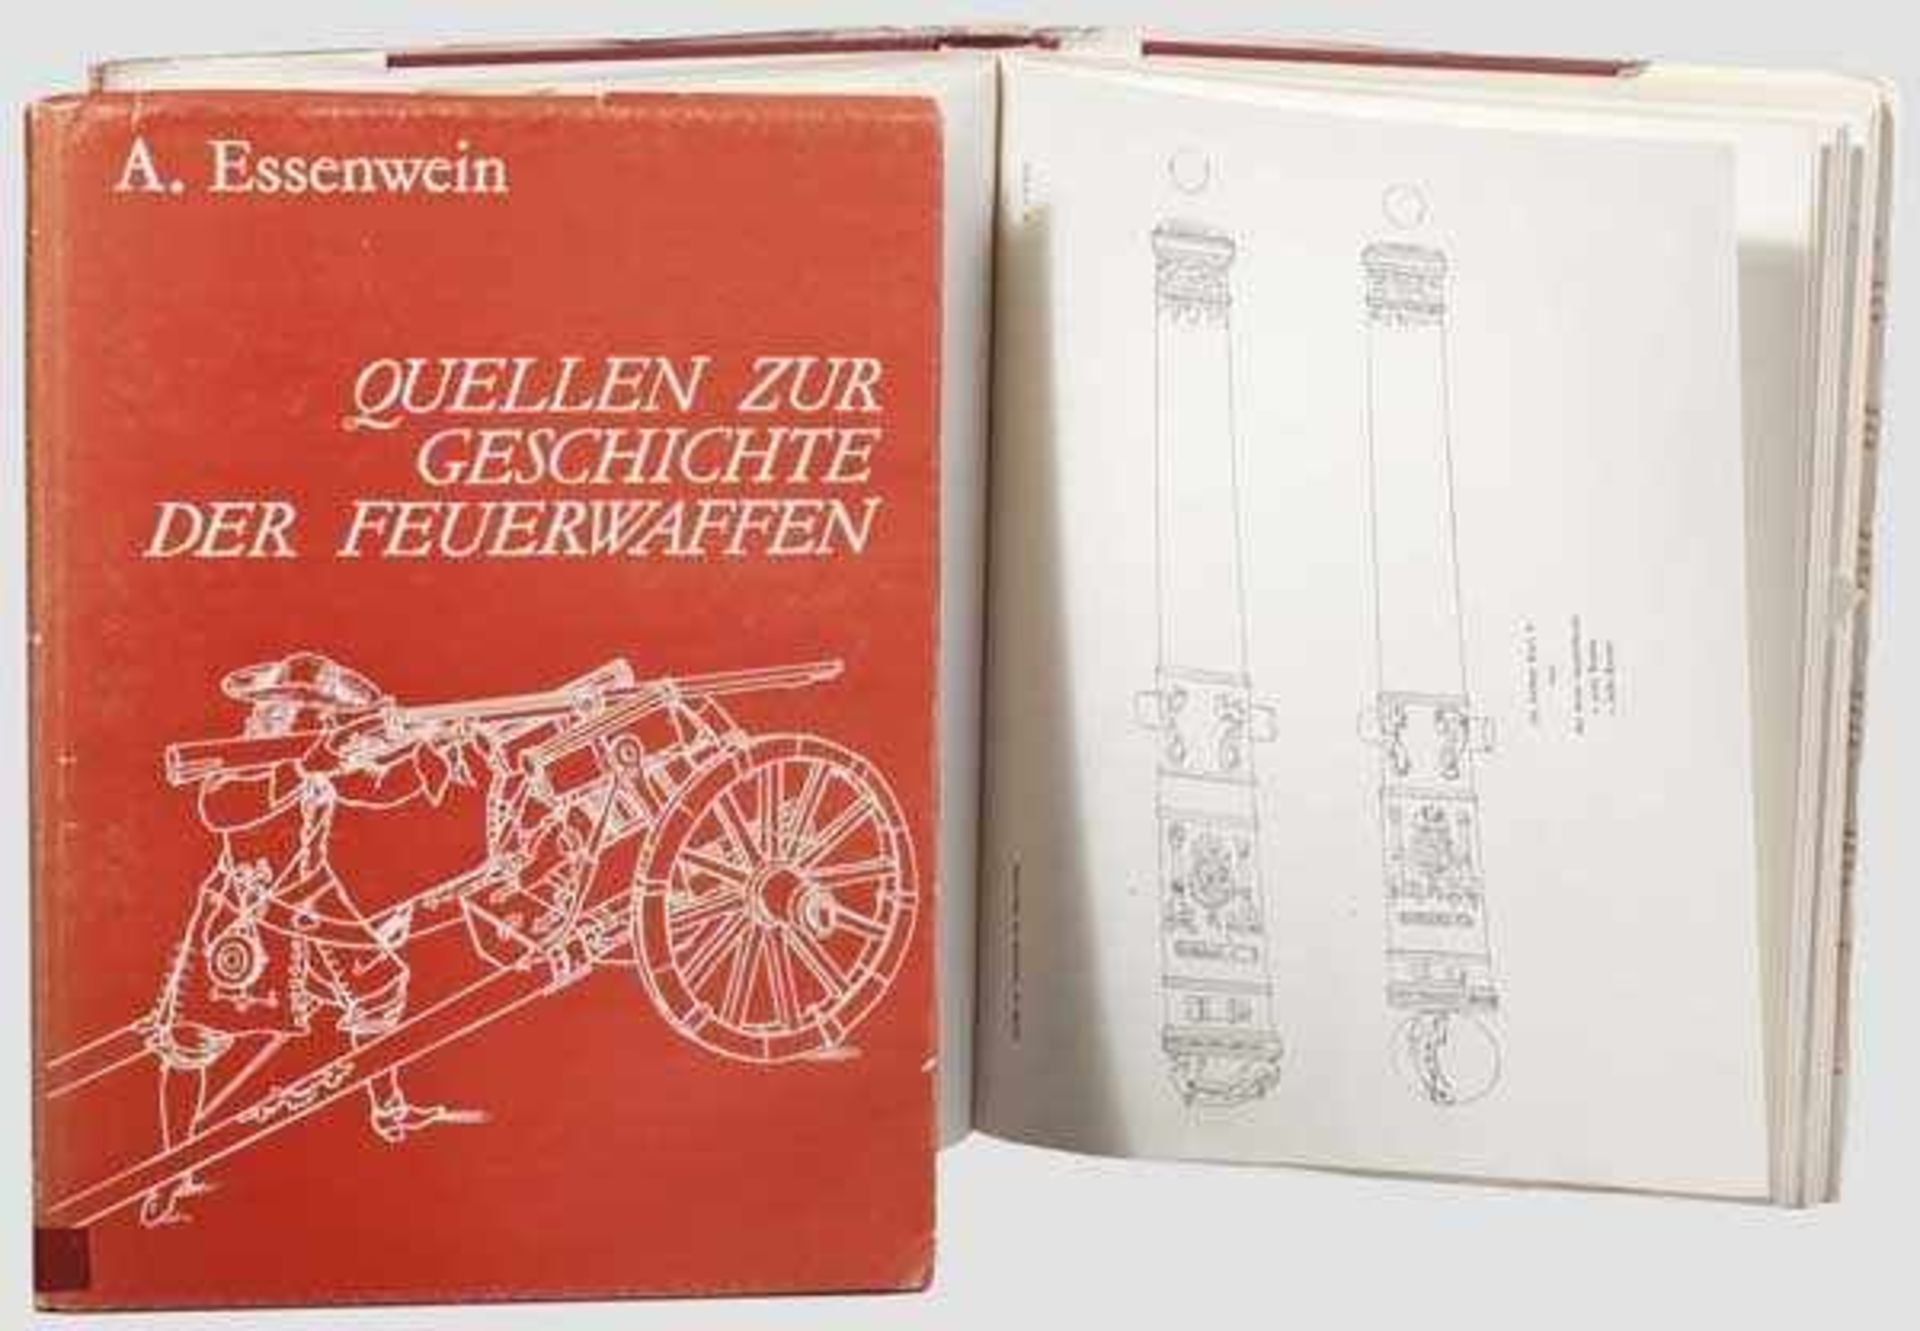 A.Essenwein, "Quellen zur Geschichte der Feuerwaffen" Text- und Tafelband in 2 Bänden.